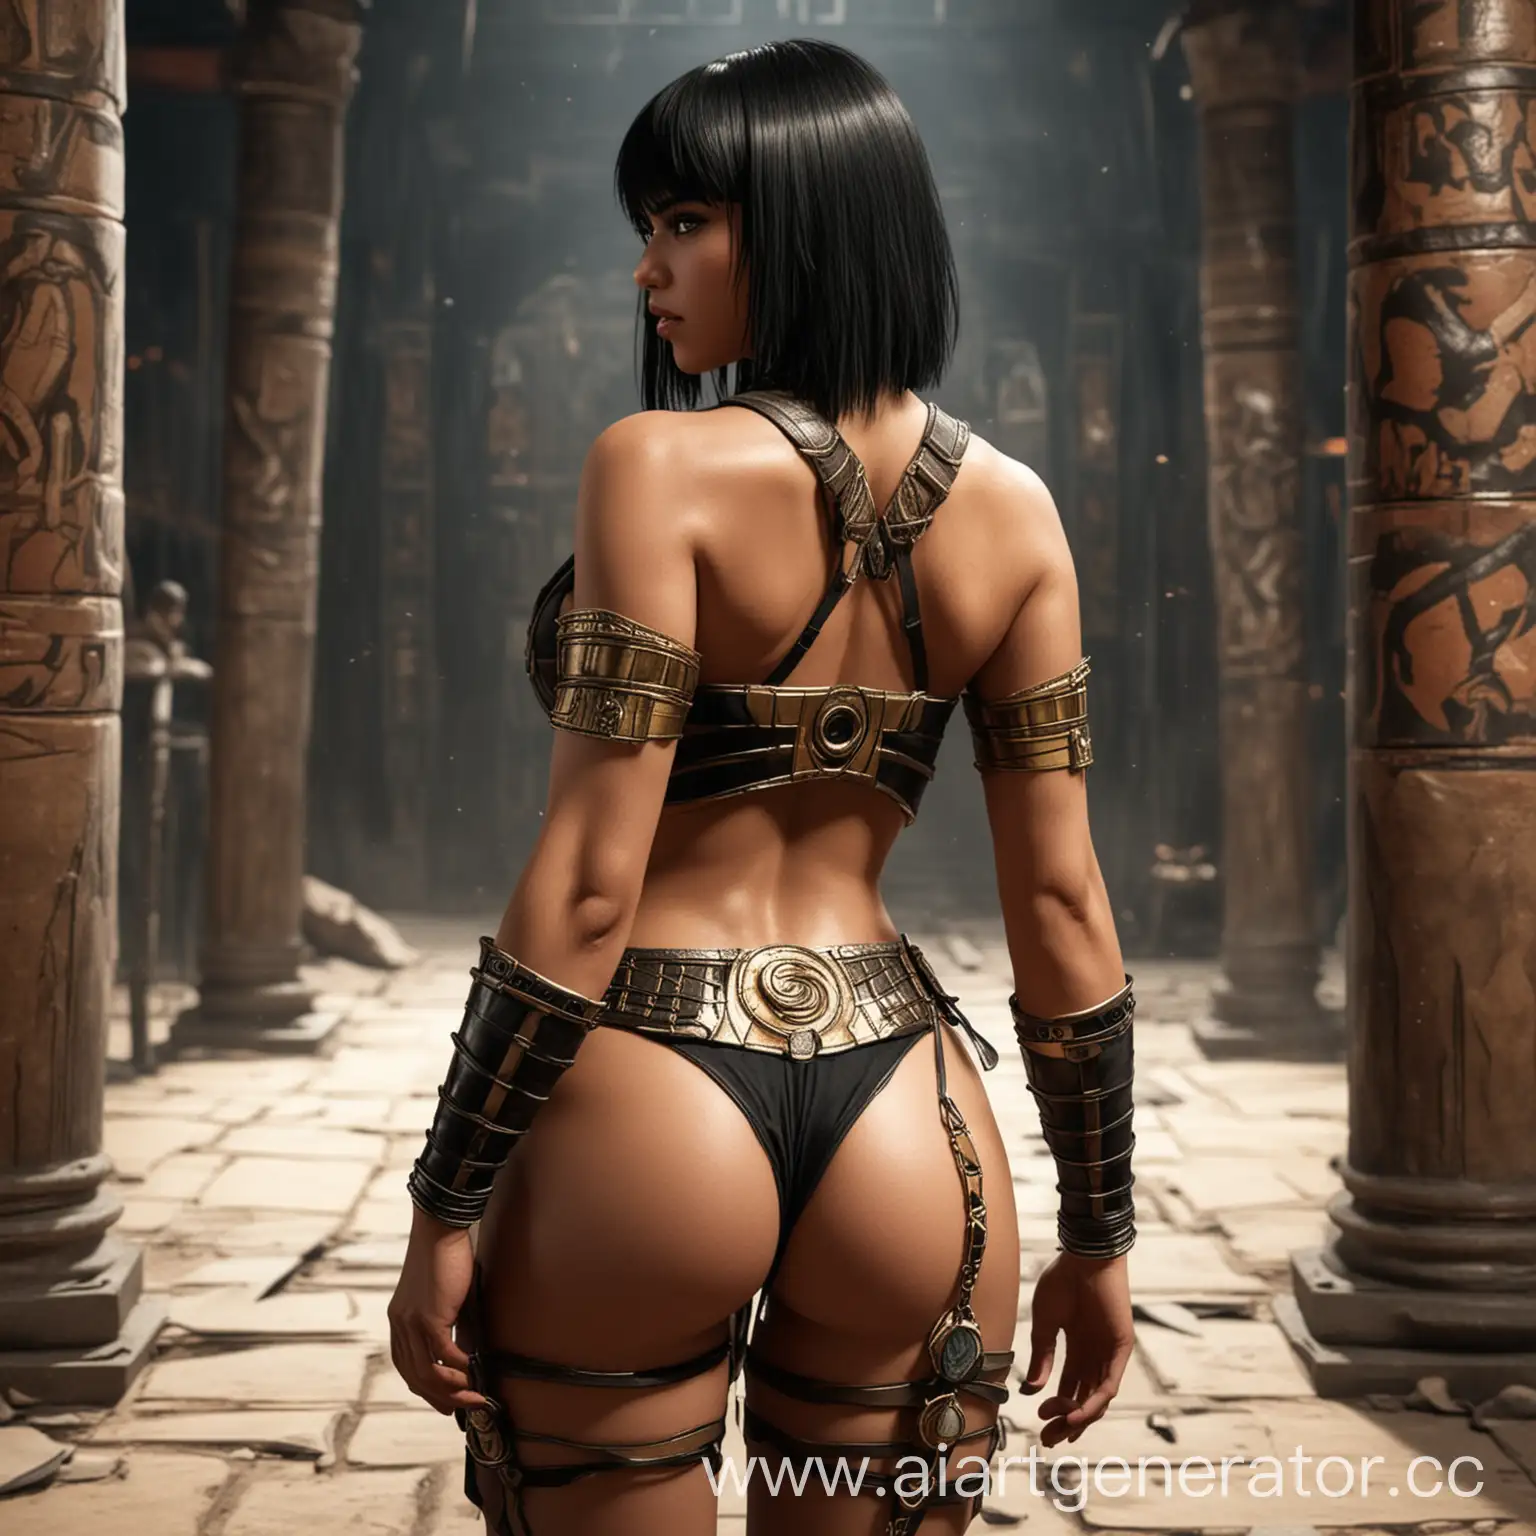 Девушка, Мортал Комбат, египетский стиль, черные волосы, челка, попка, стоит спиной, стринги
